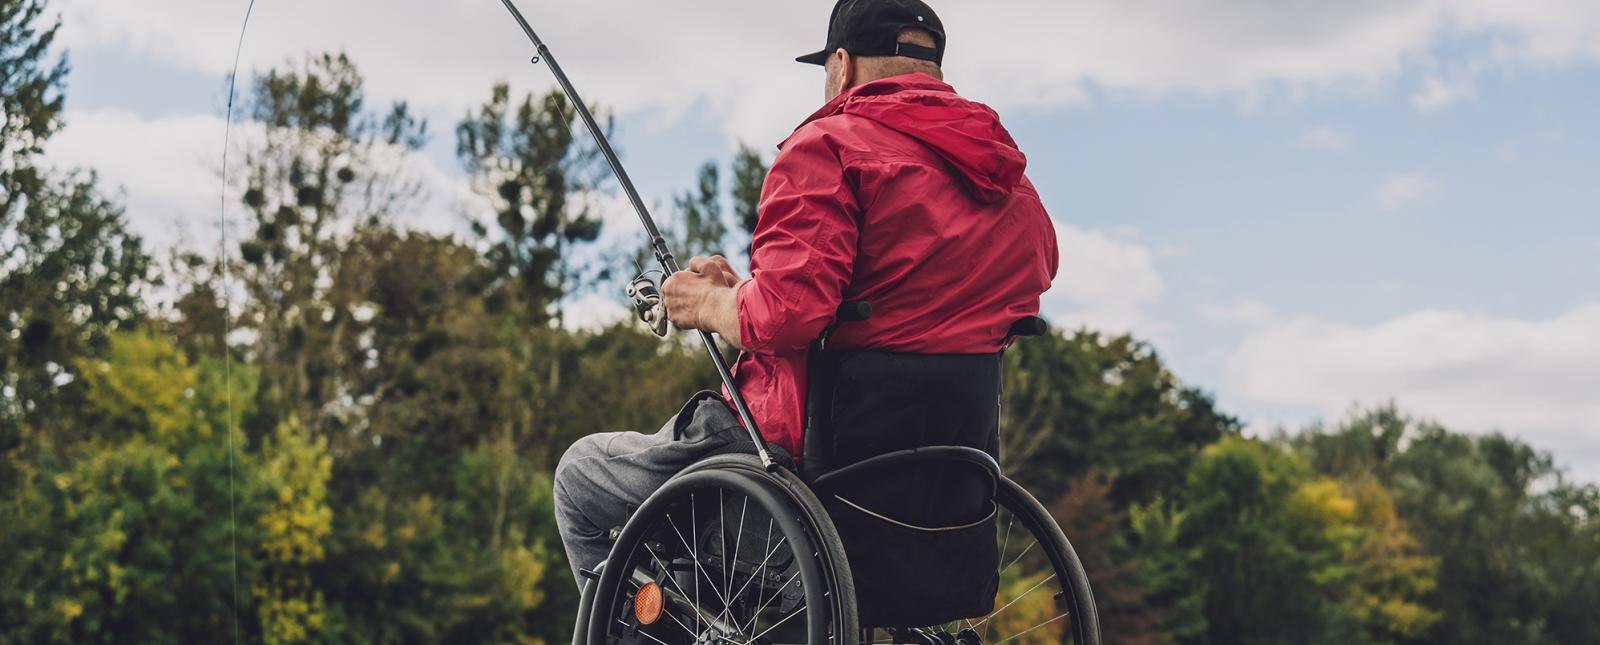 Senior citizen fishing off pier in wheelchair 